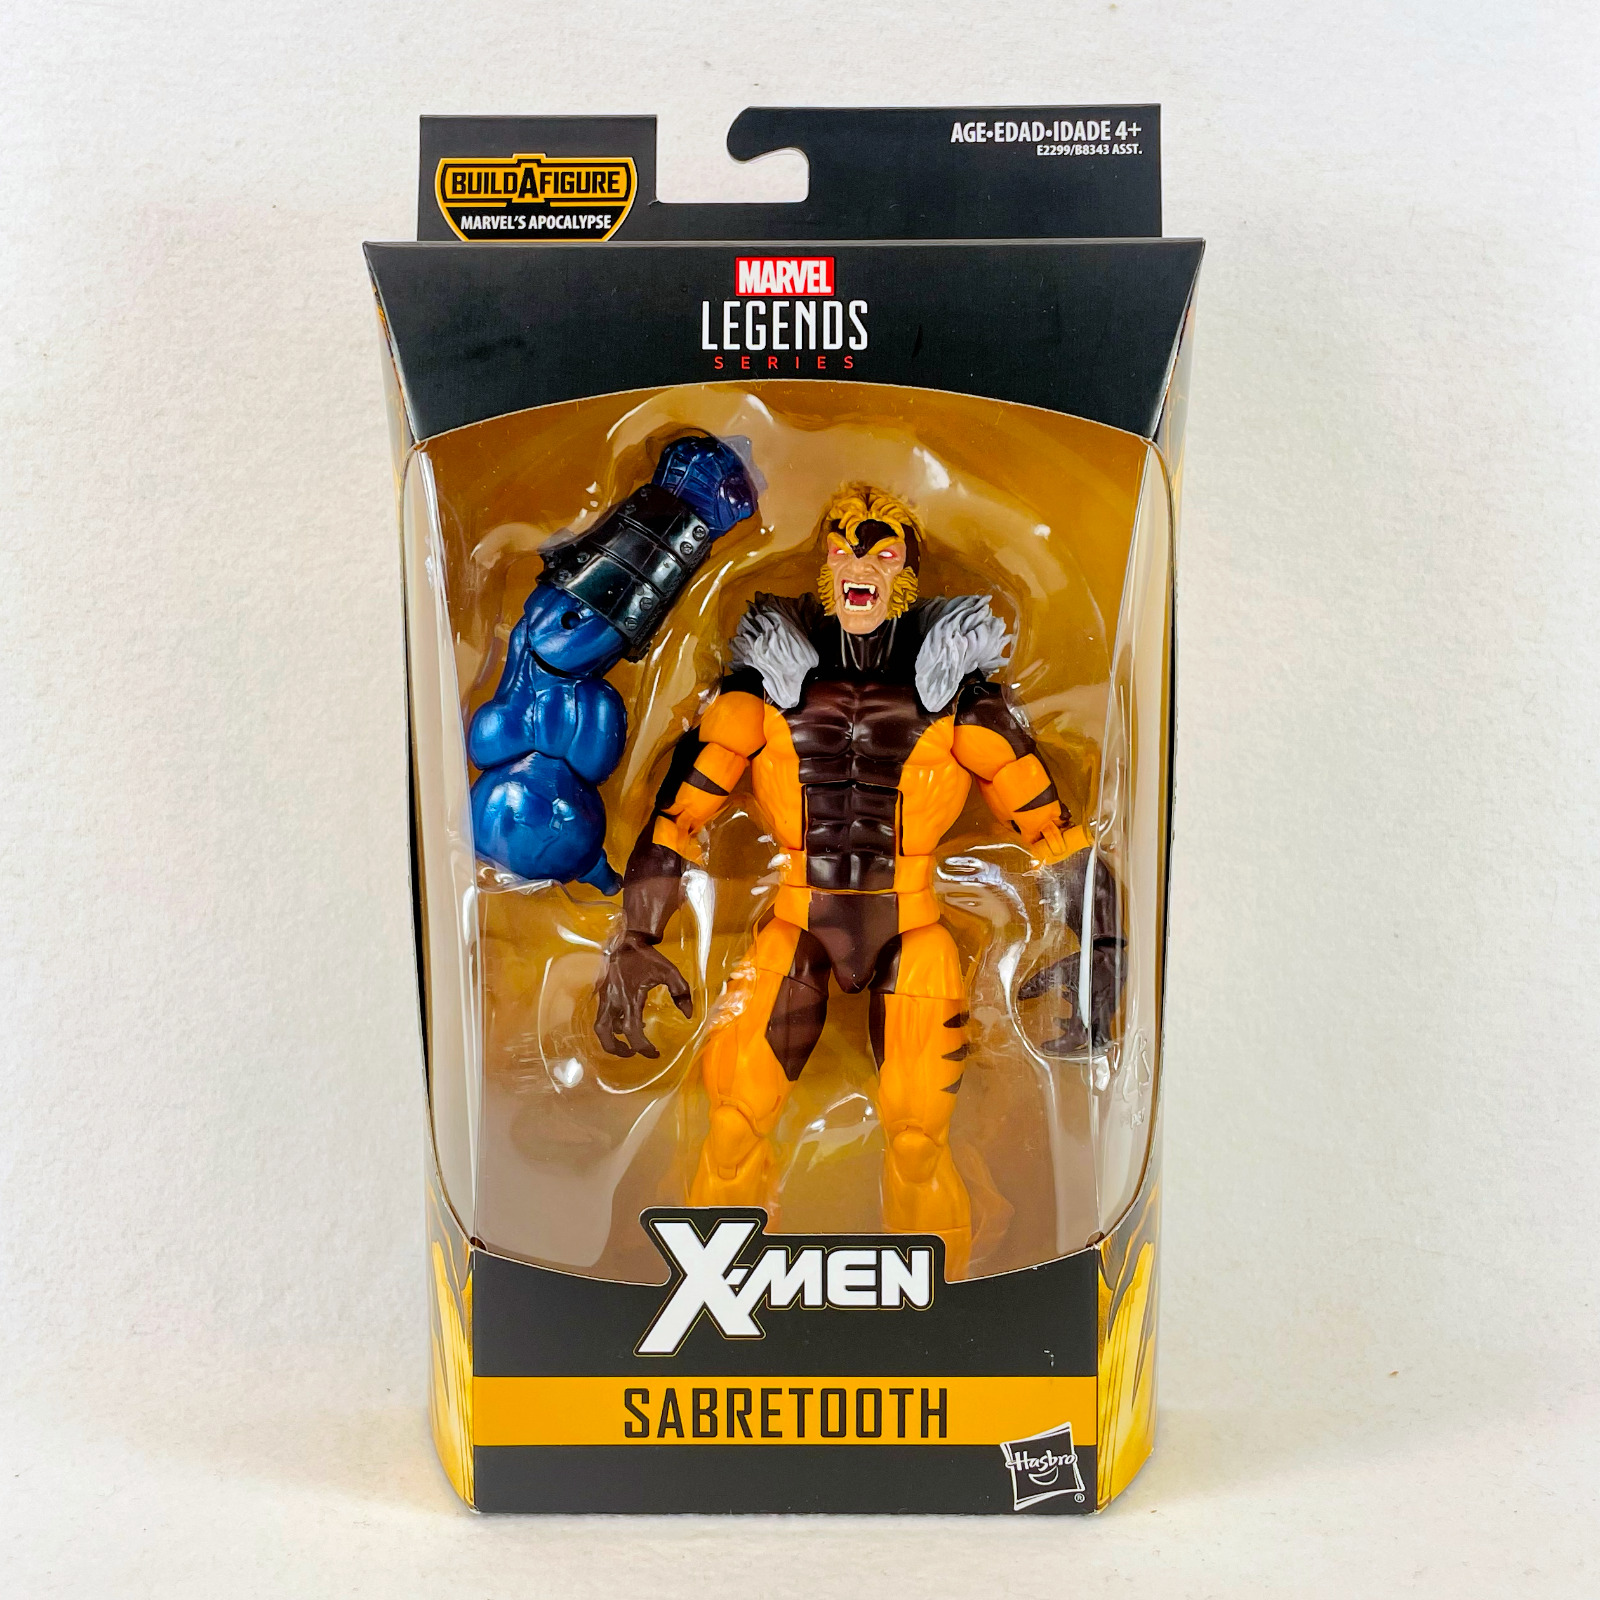 Marvel Legends X-Men Sabretooth - Apocalypse BAF 6" Action Figure